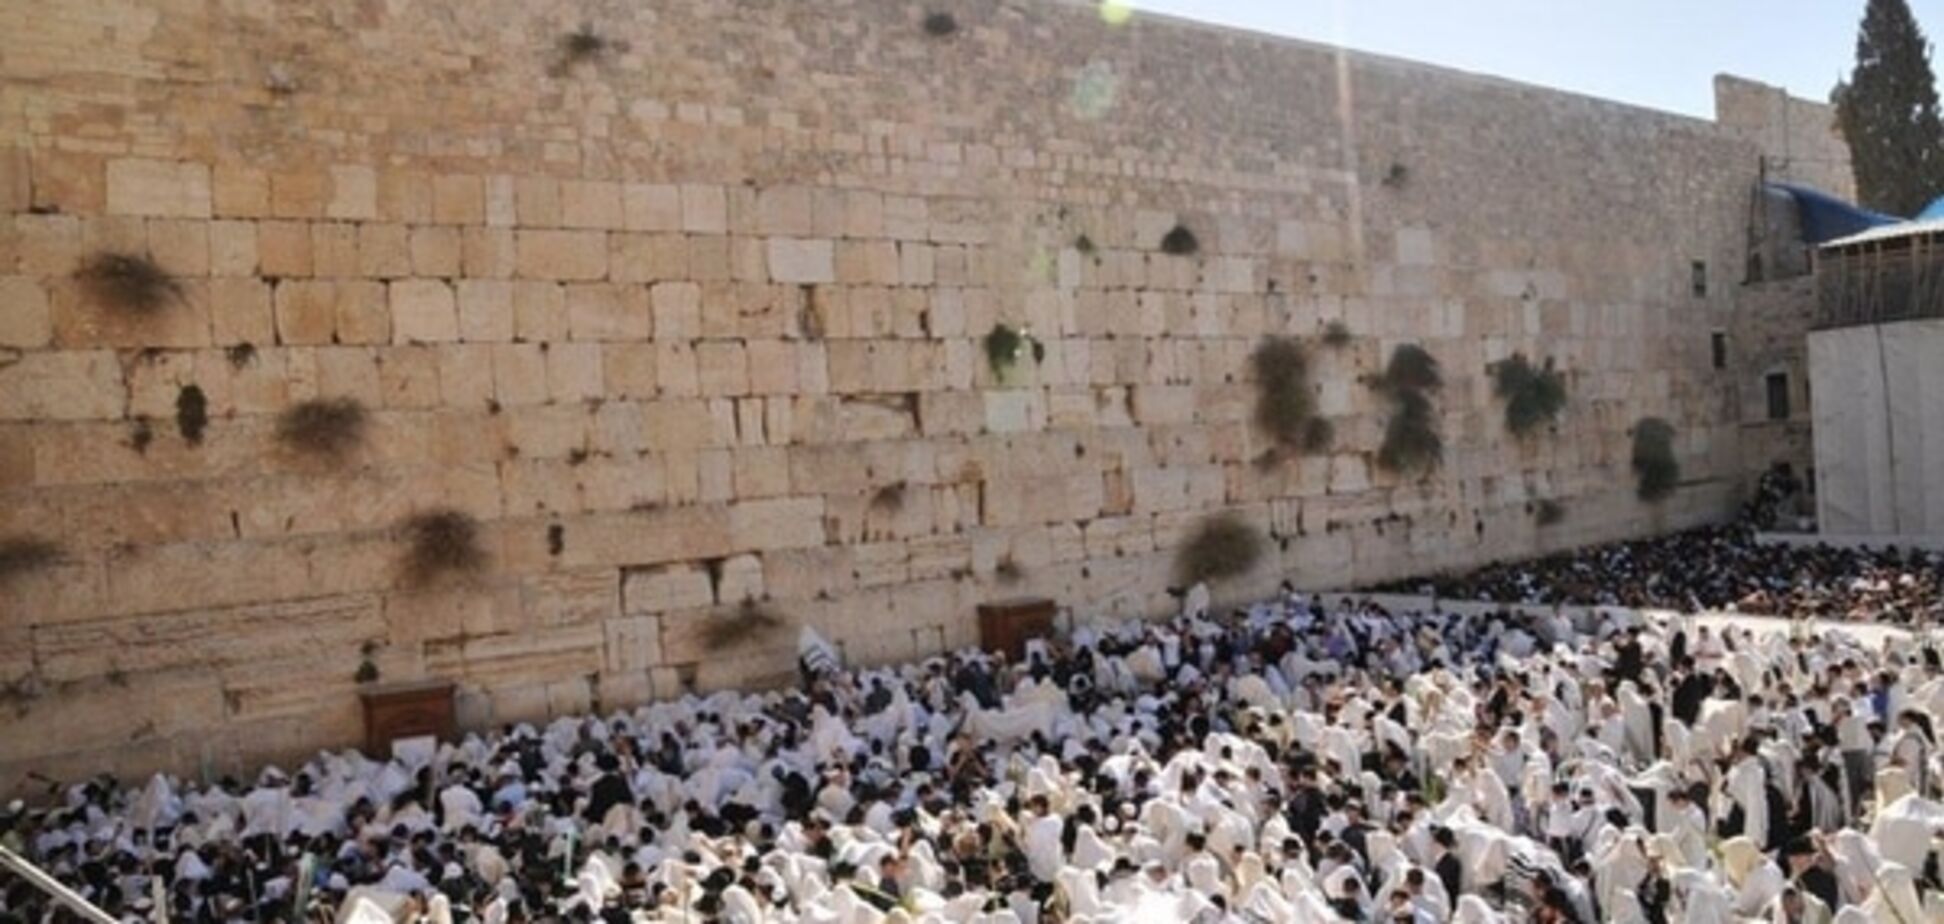 ЮНЕСКО отказала Палестине в претензиях на Стену Плача